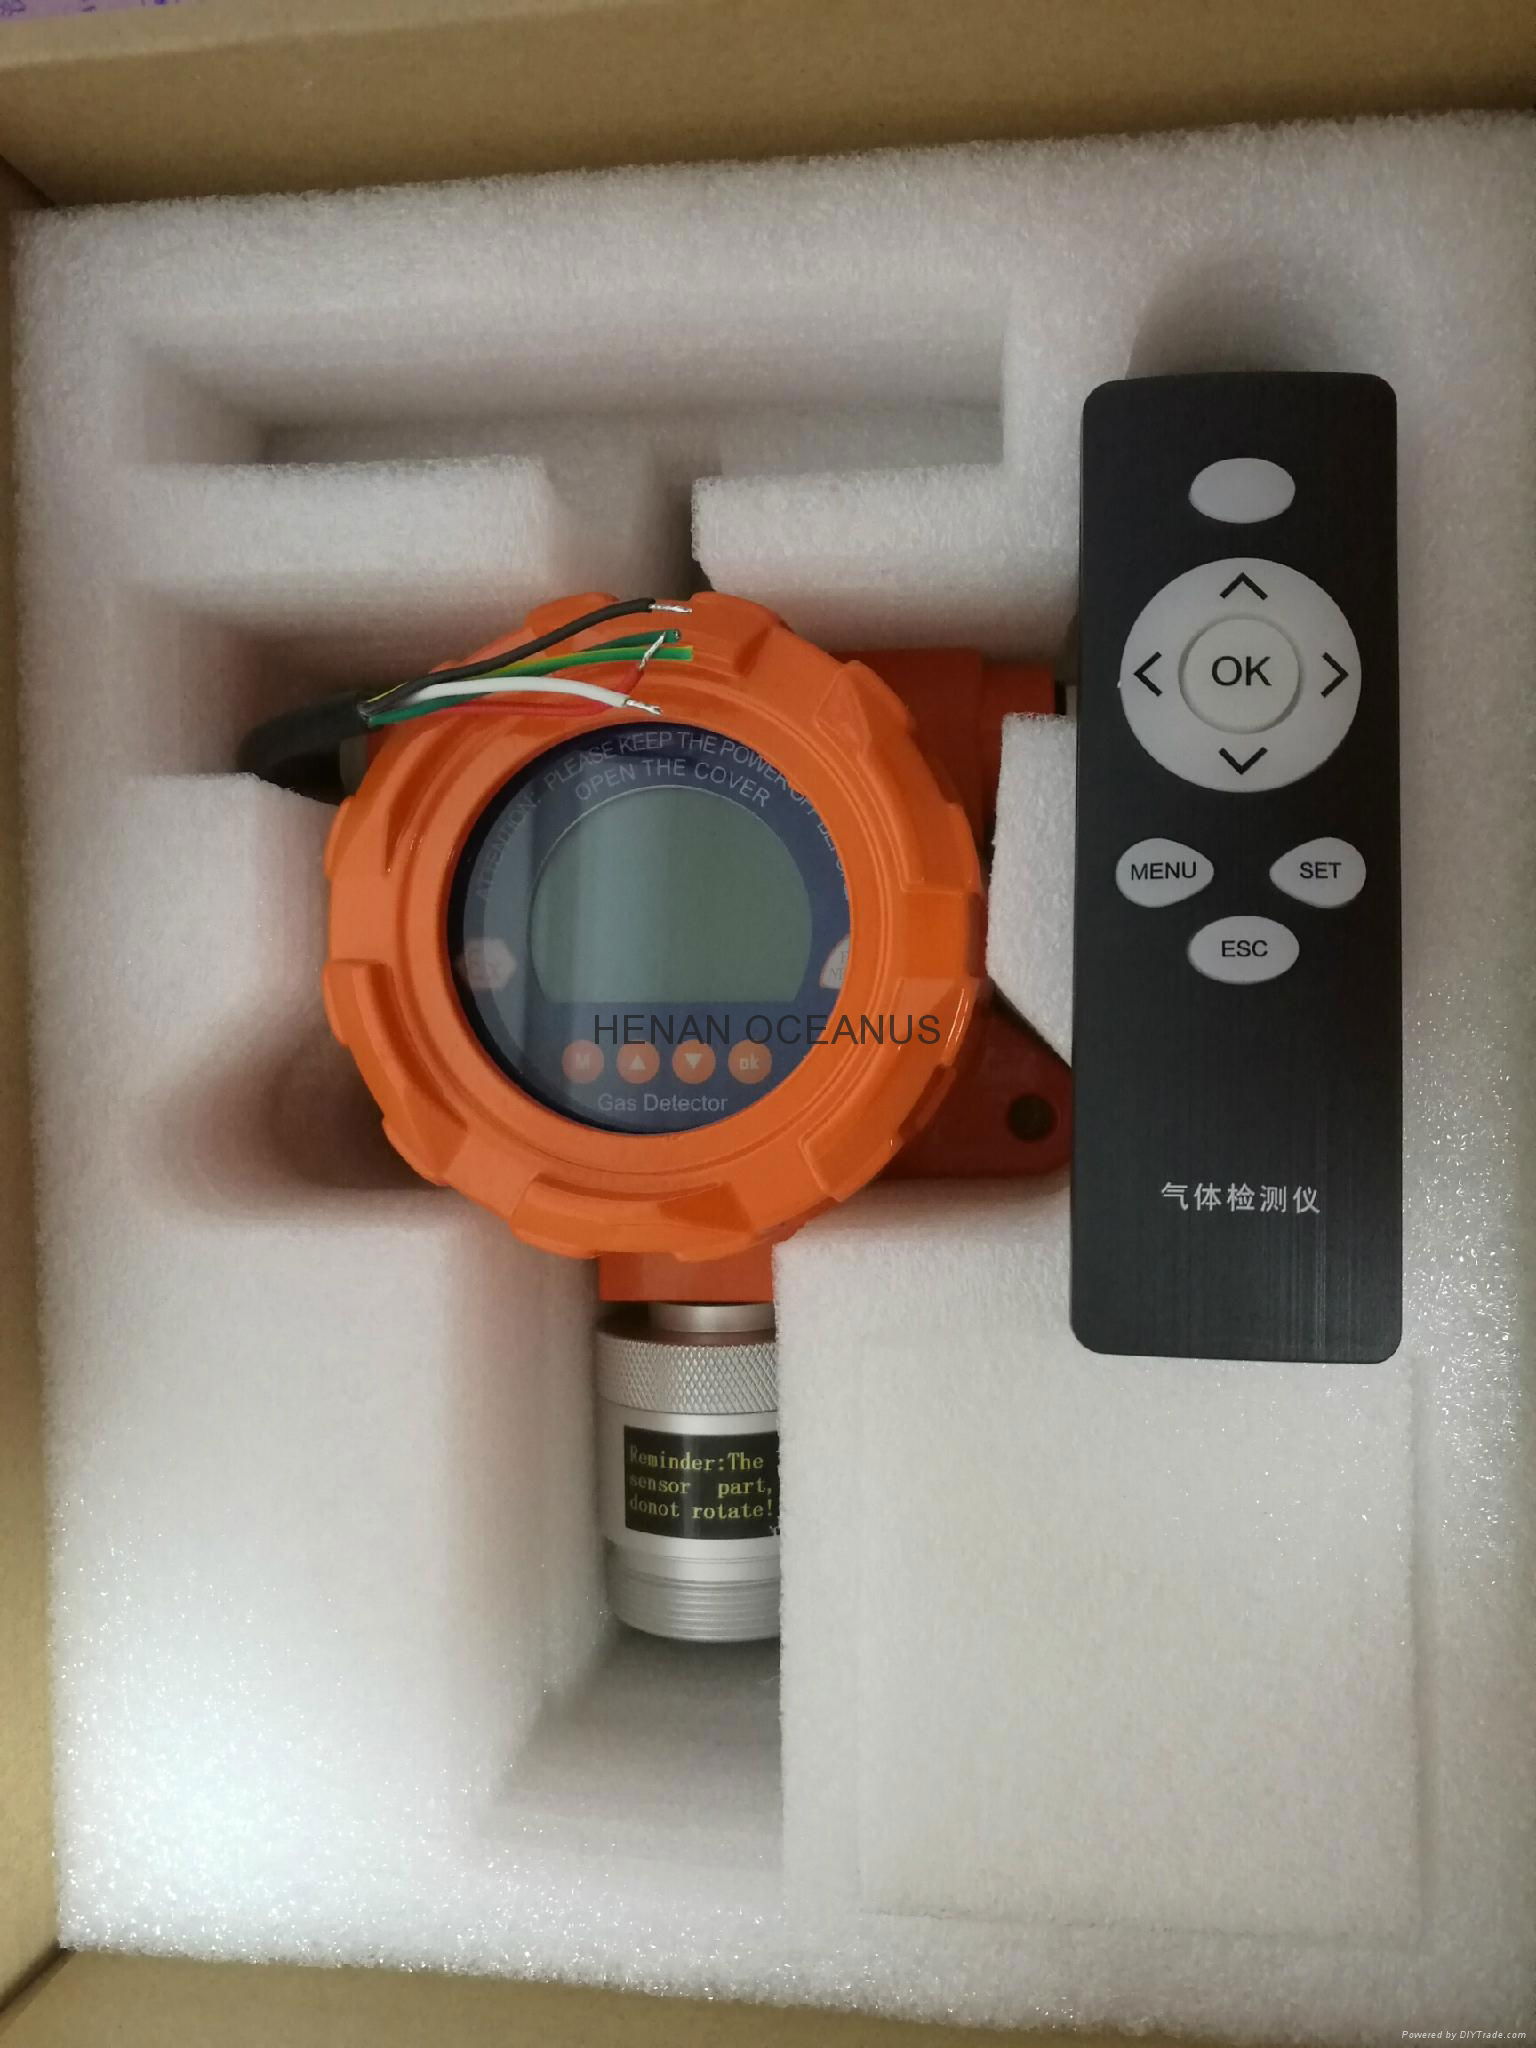 Fixed Carbon monoxide CO gas detection system 4